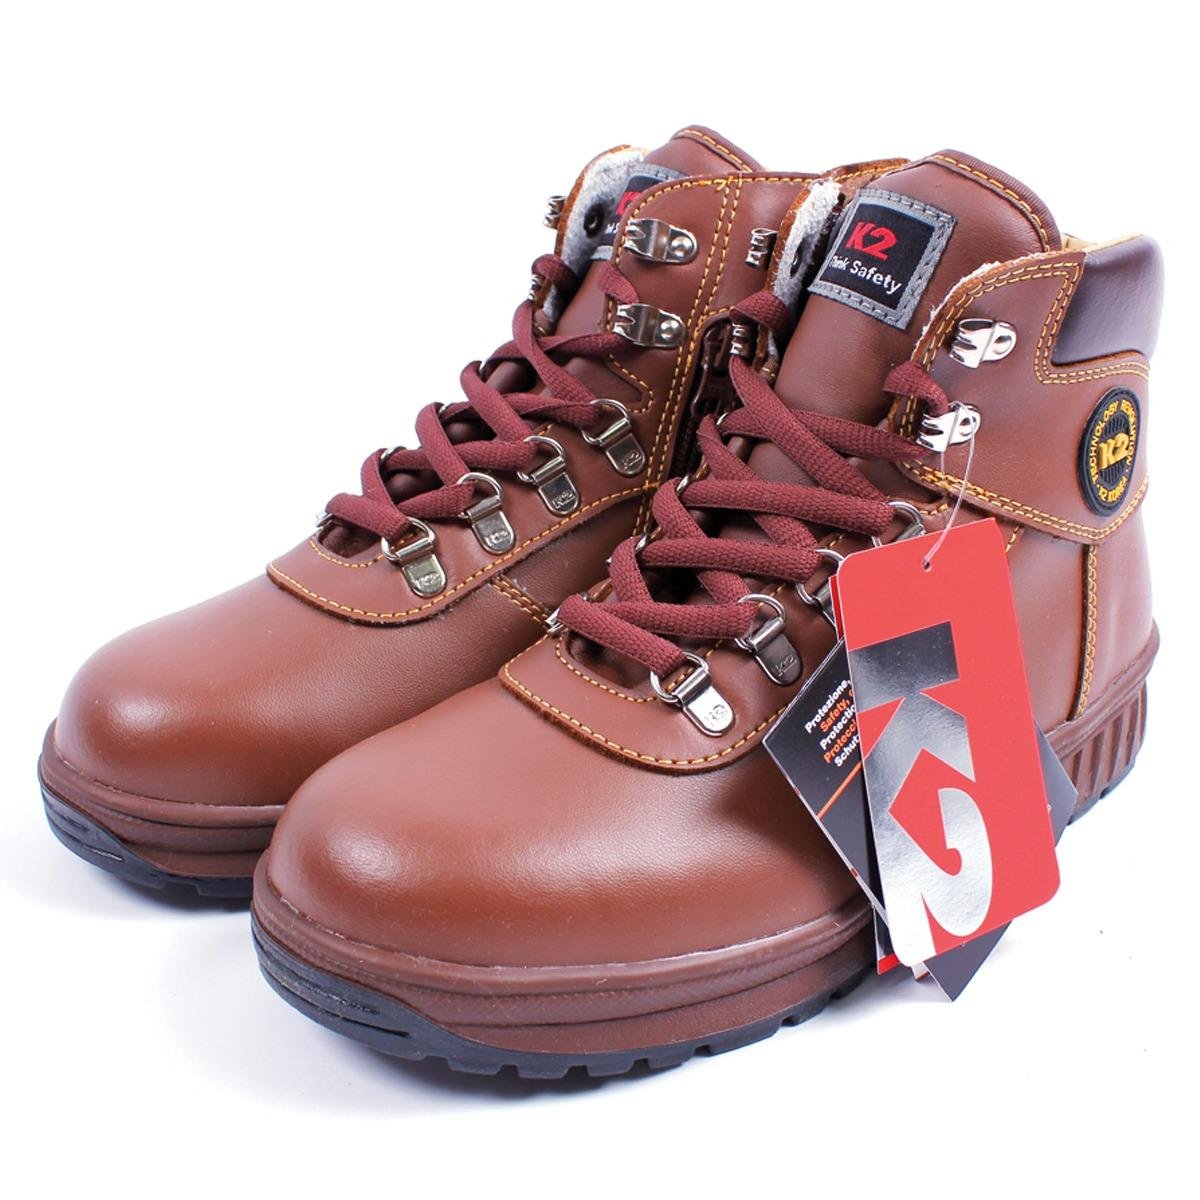 Giày Bảo Hộ Lao Động Hàn Quốc K2-14 - Korea Safety Shoes